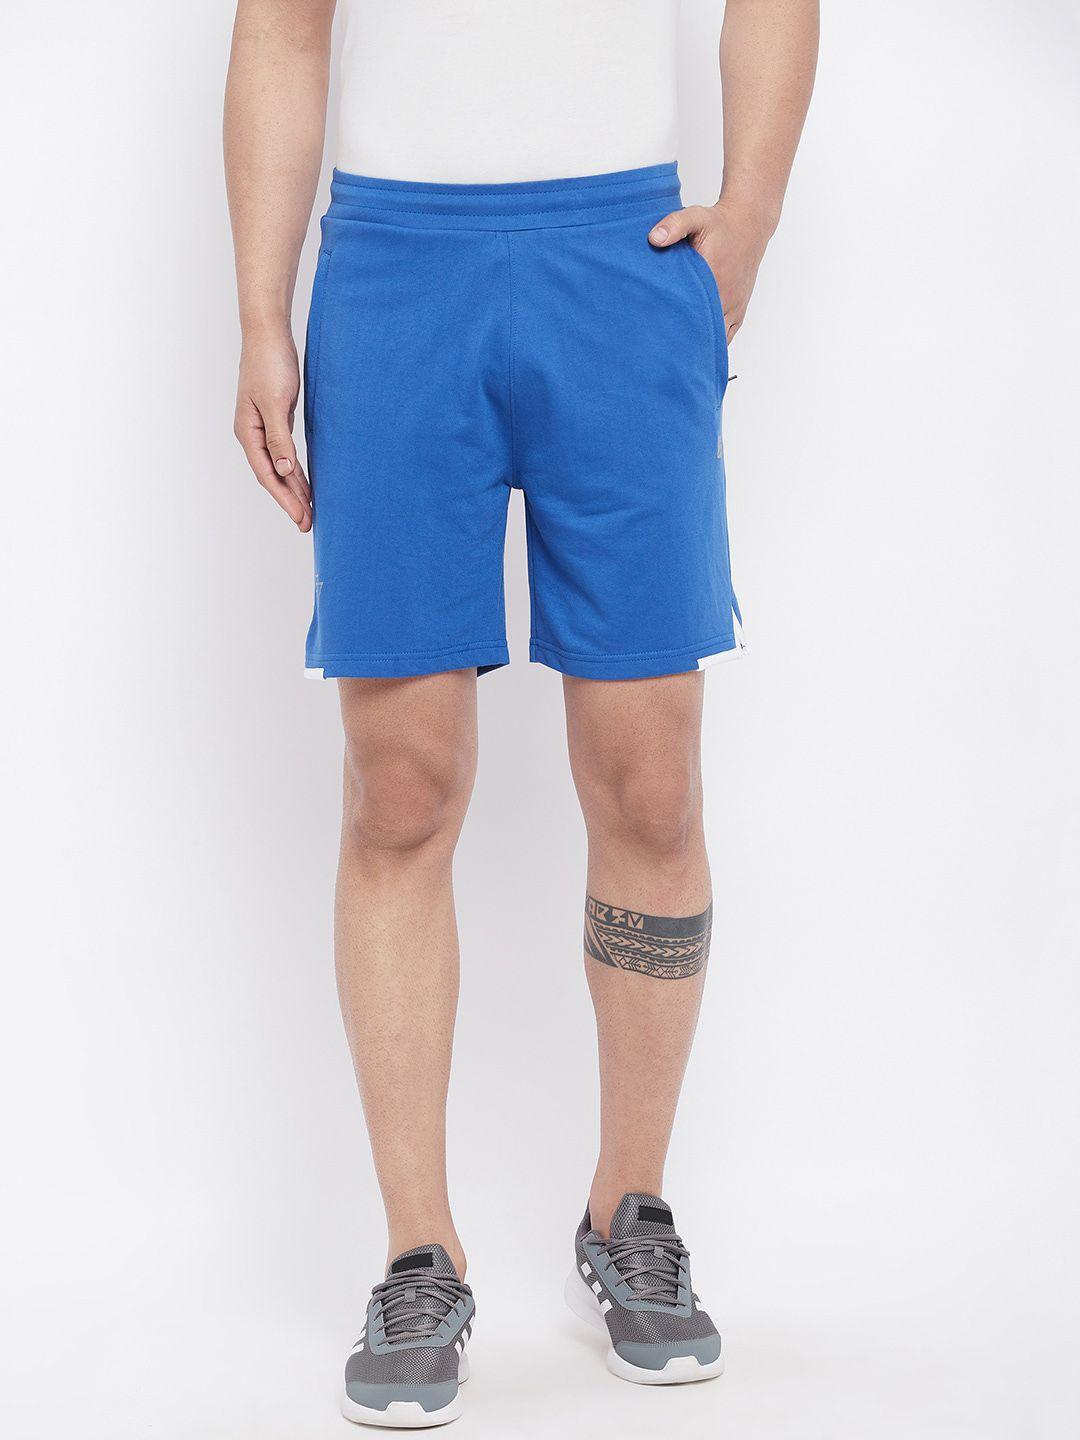 unpar-men-blue-outdoor-cotton-sports-shorts